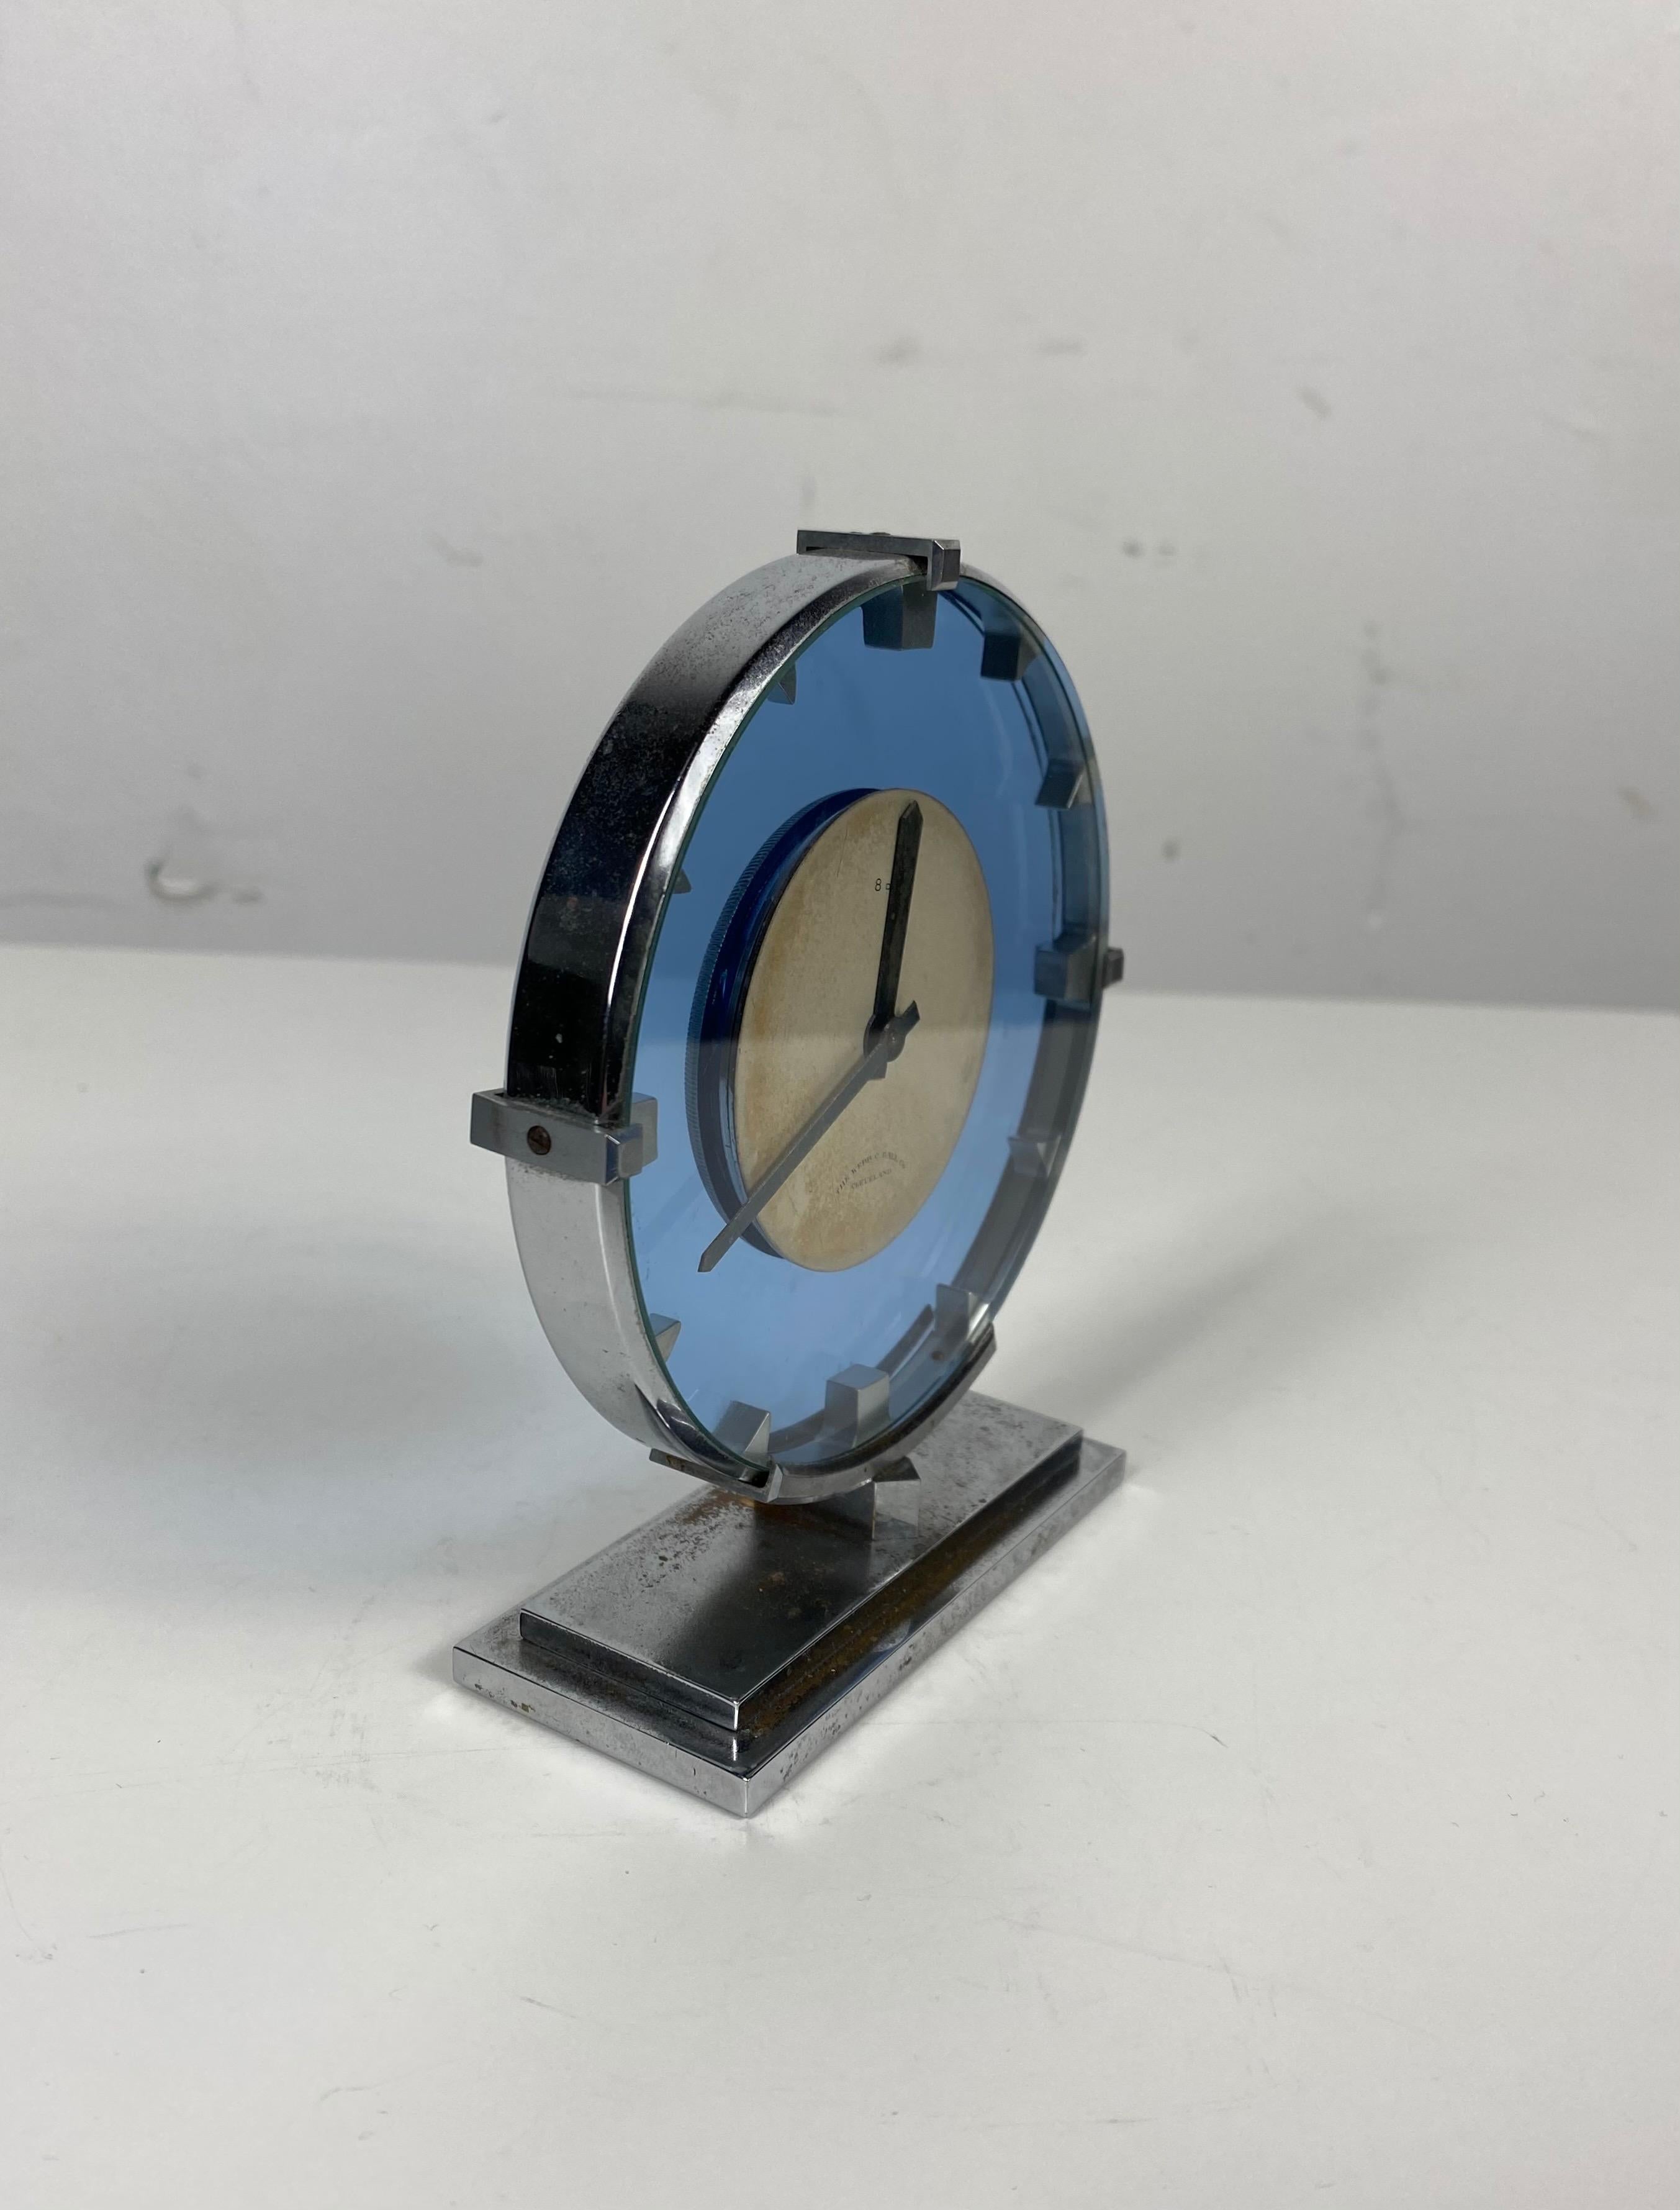 Impresionante Reloj Art Decó / Machine Age de Acero Inoxidable y Cristal Azul mediados del siglo XX en venta